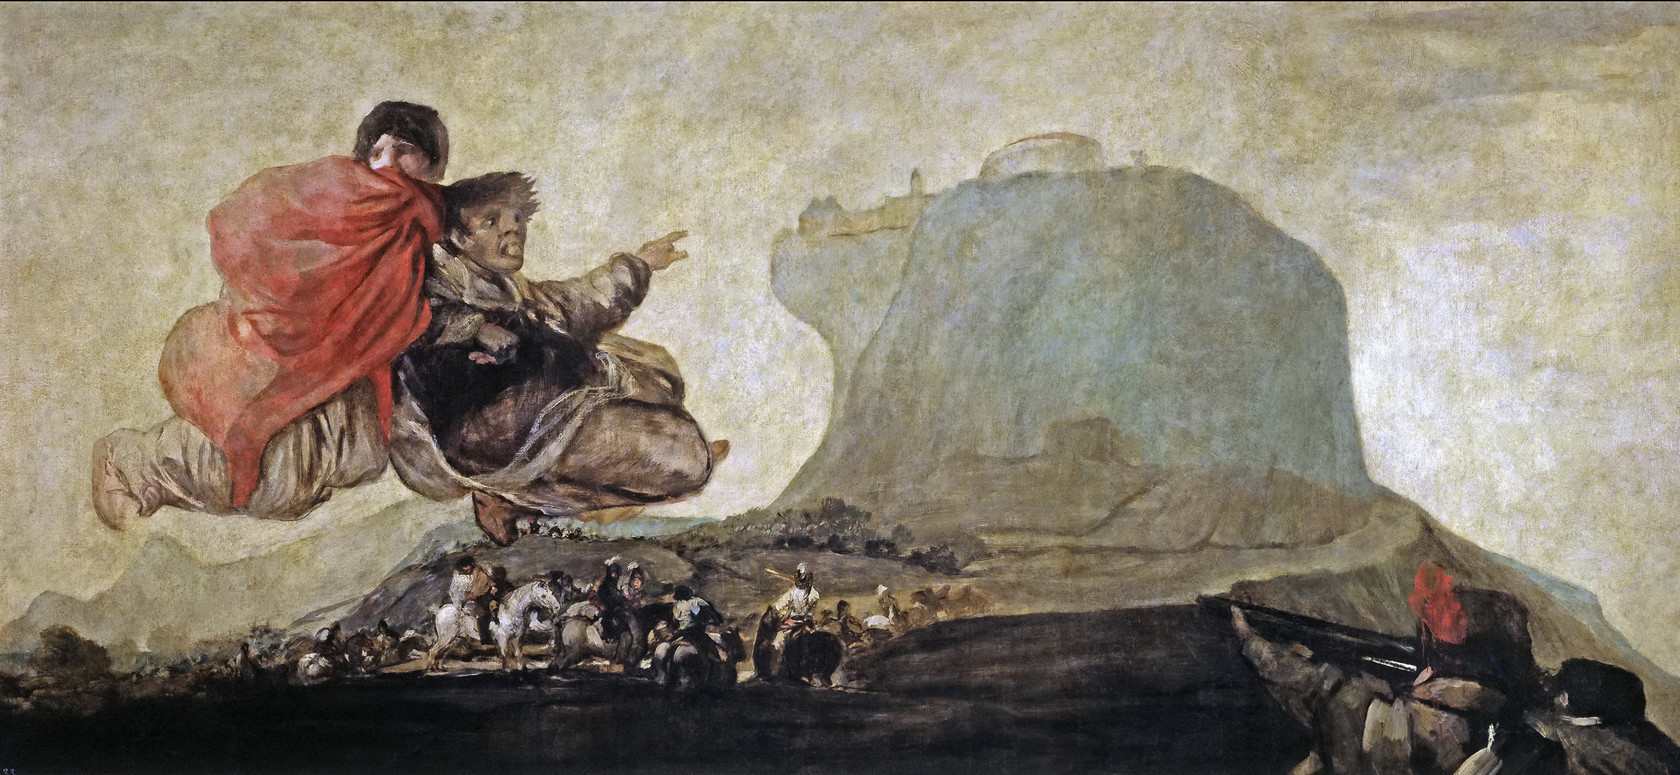 Картина - Суббота, или Асмодей, 1820 - 1823